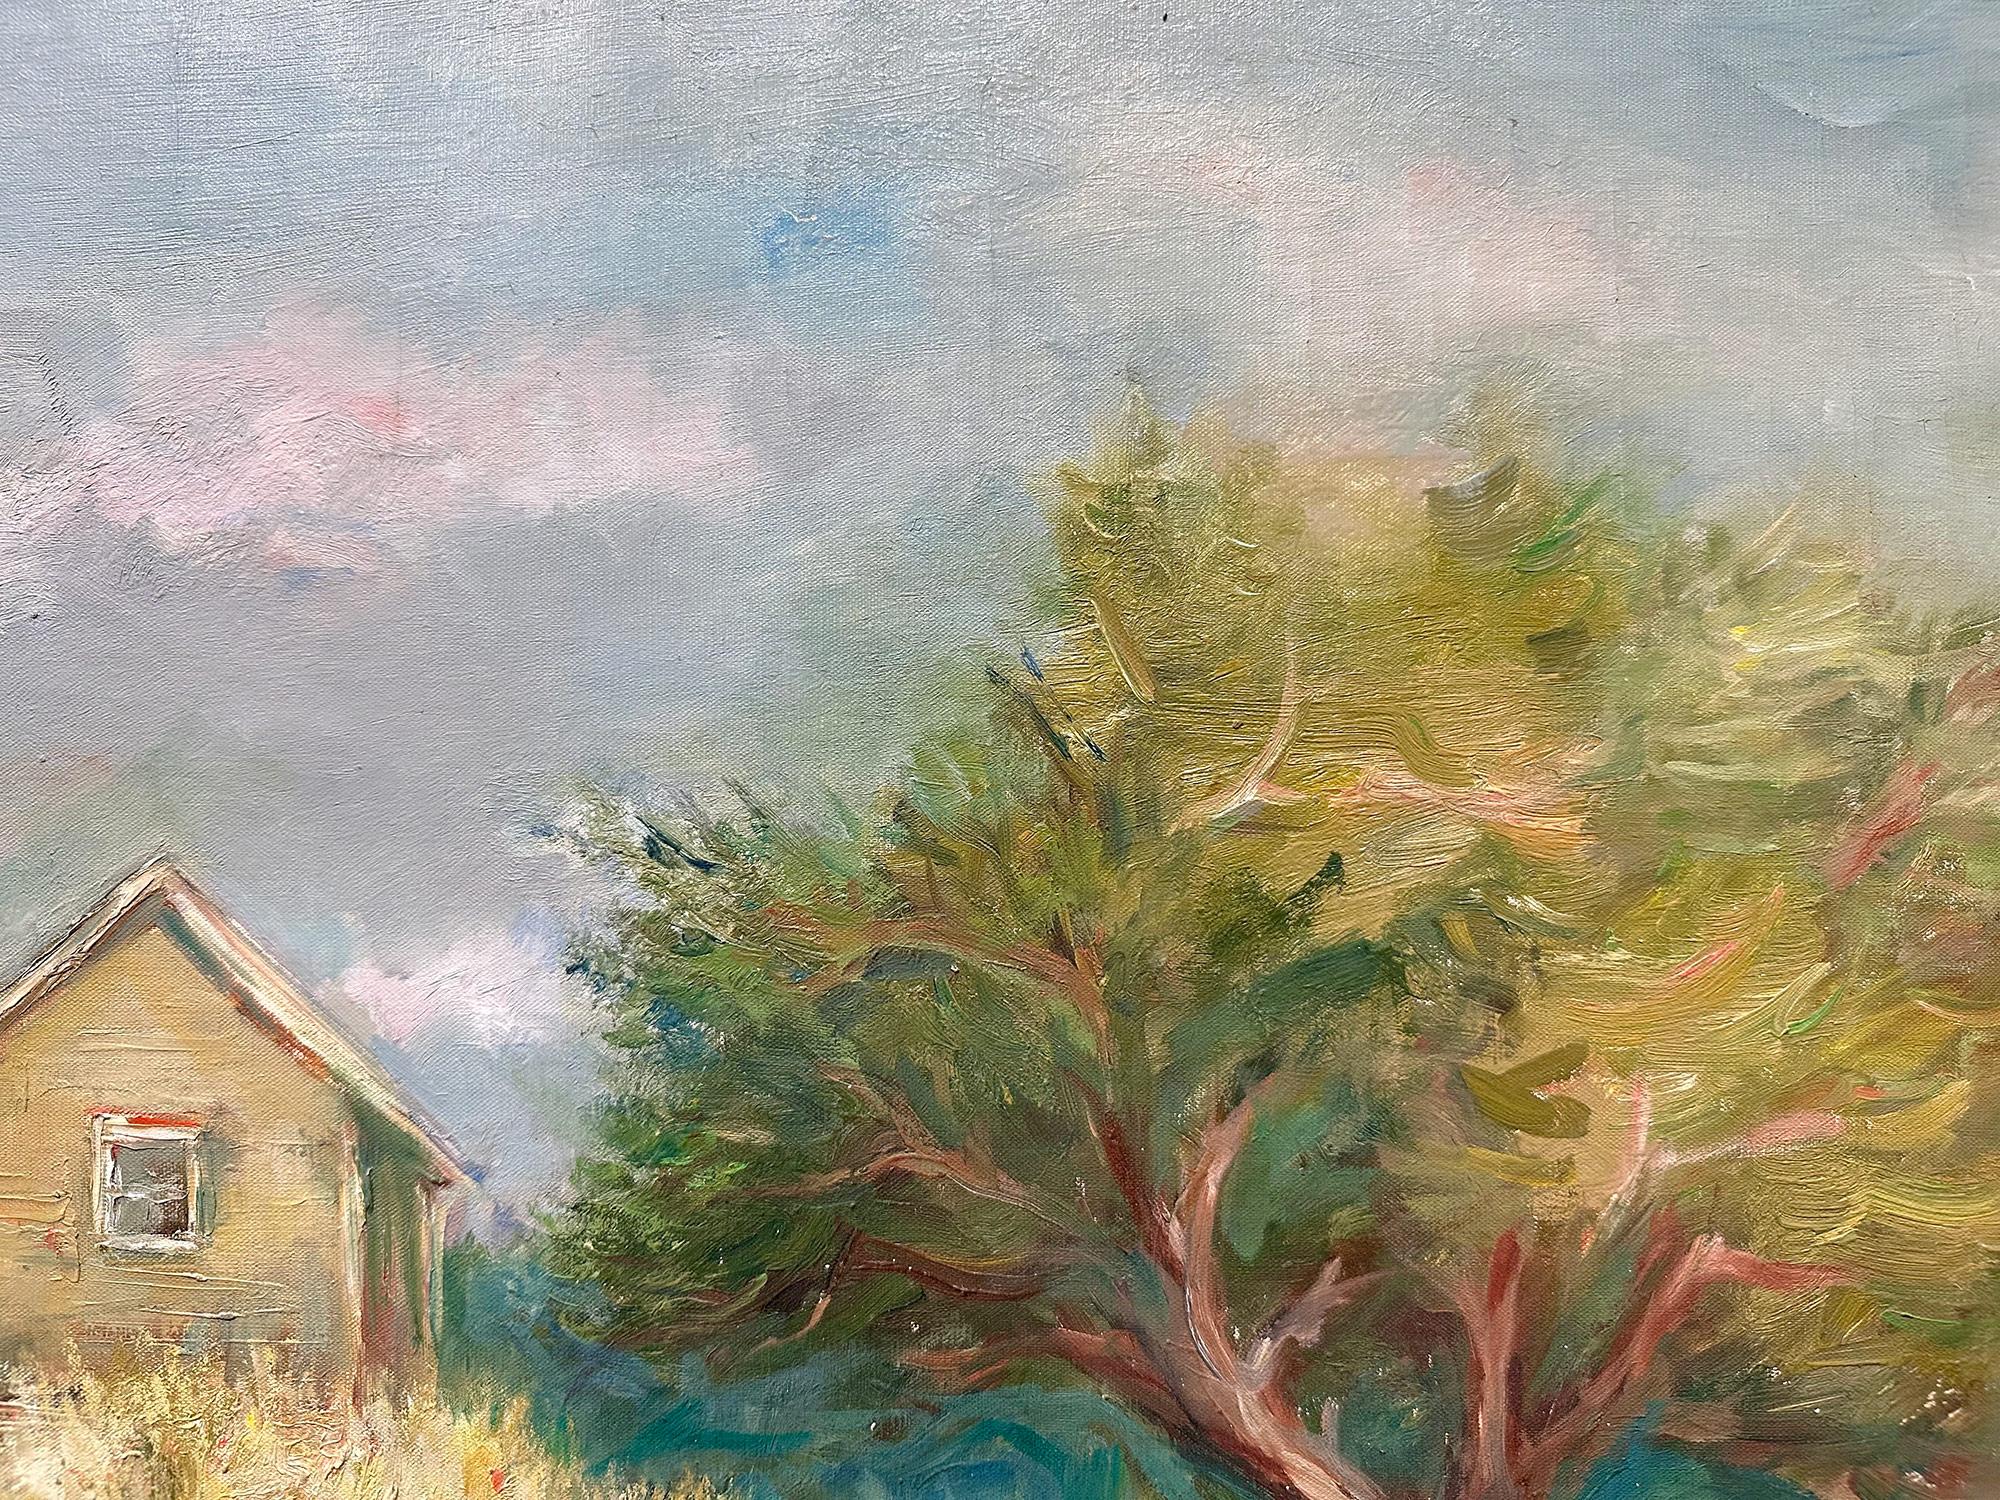 Ce tableau représente un paysage fantaisiste d'un sentier de campagne traversant la ville avec les maisons du village sur le côté gauche et une clôture en bois à côté, et à travers un arbre luxuriant qui englobe la composition. Les couleurs vives et